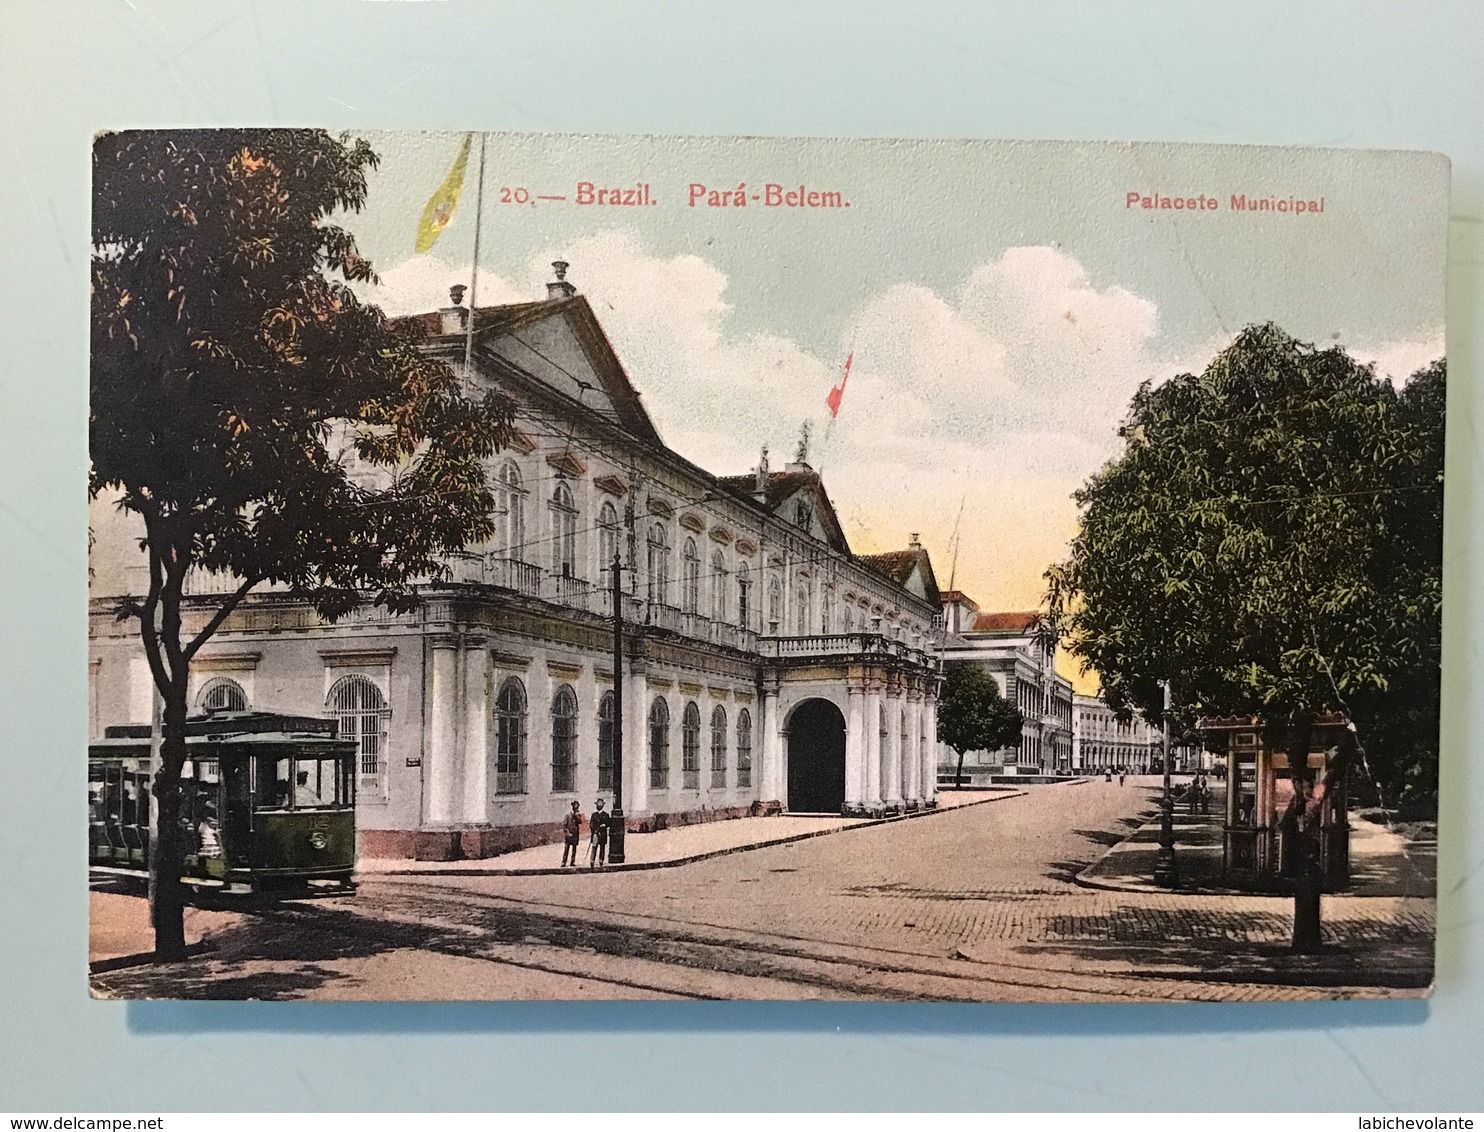 Pará-Belem. — Palaceto Municipal - Belém